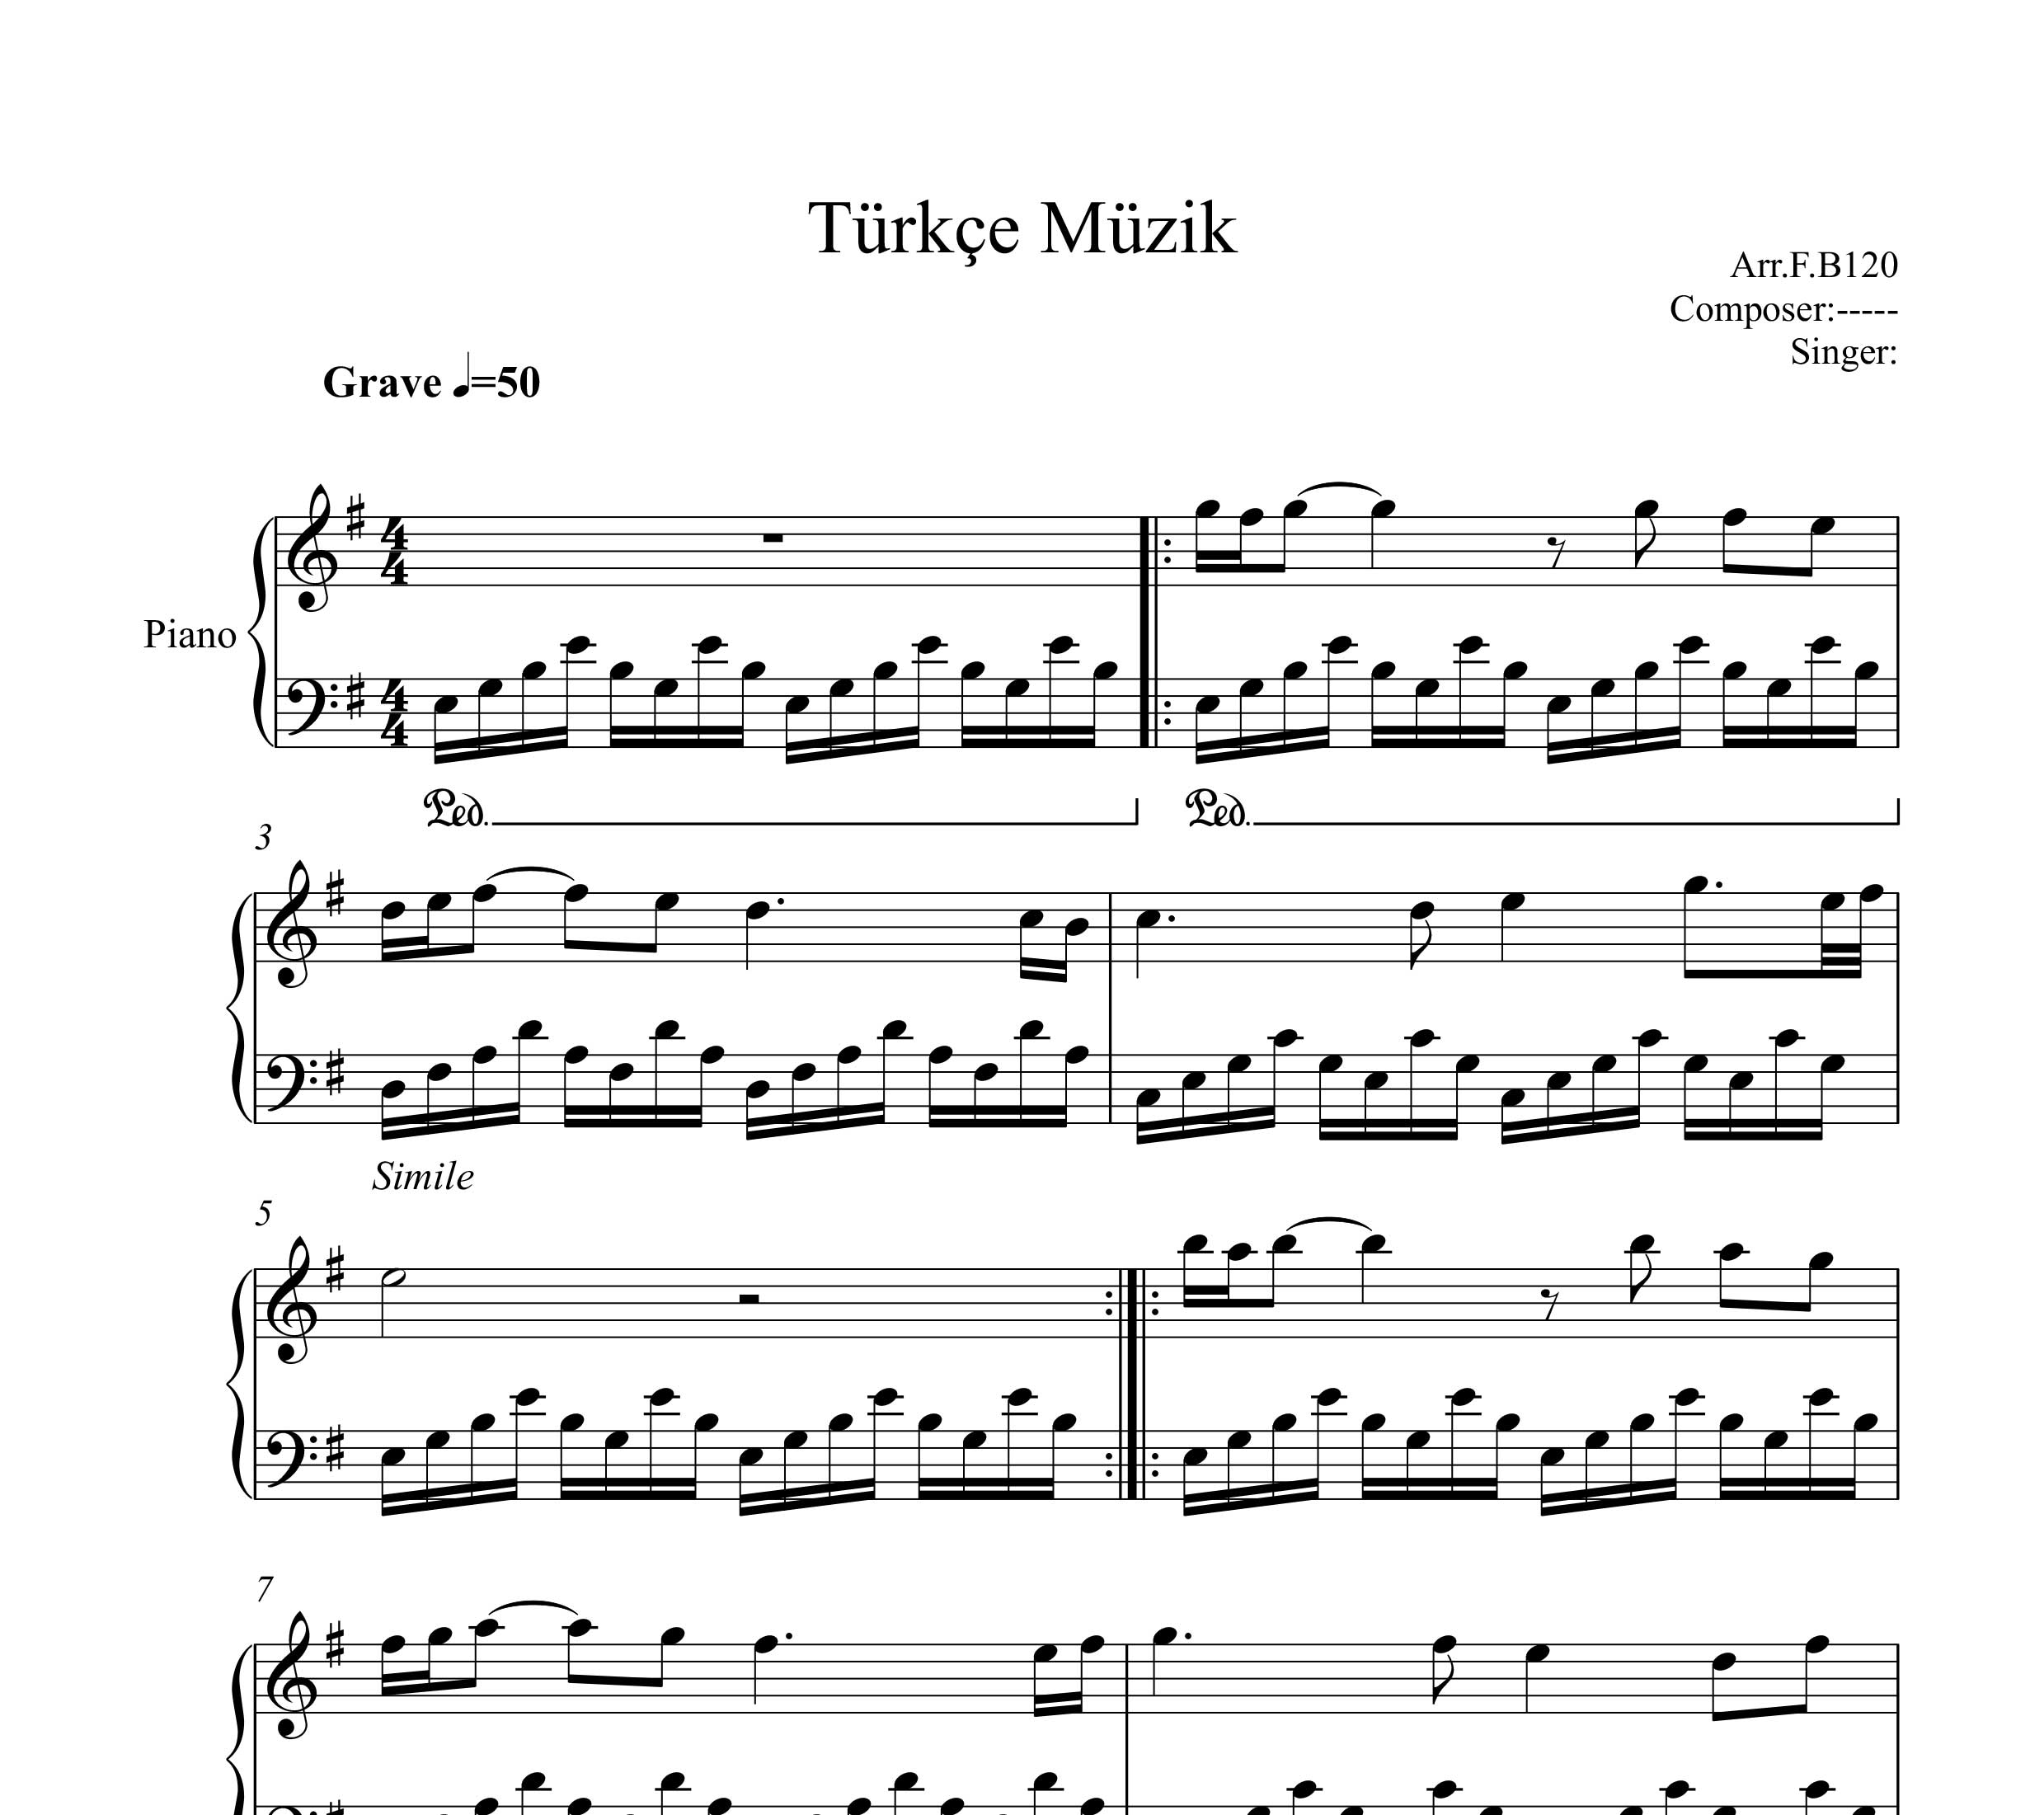 نت ترکی Türkçe Müzik برای پیانو